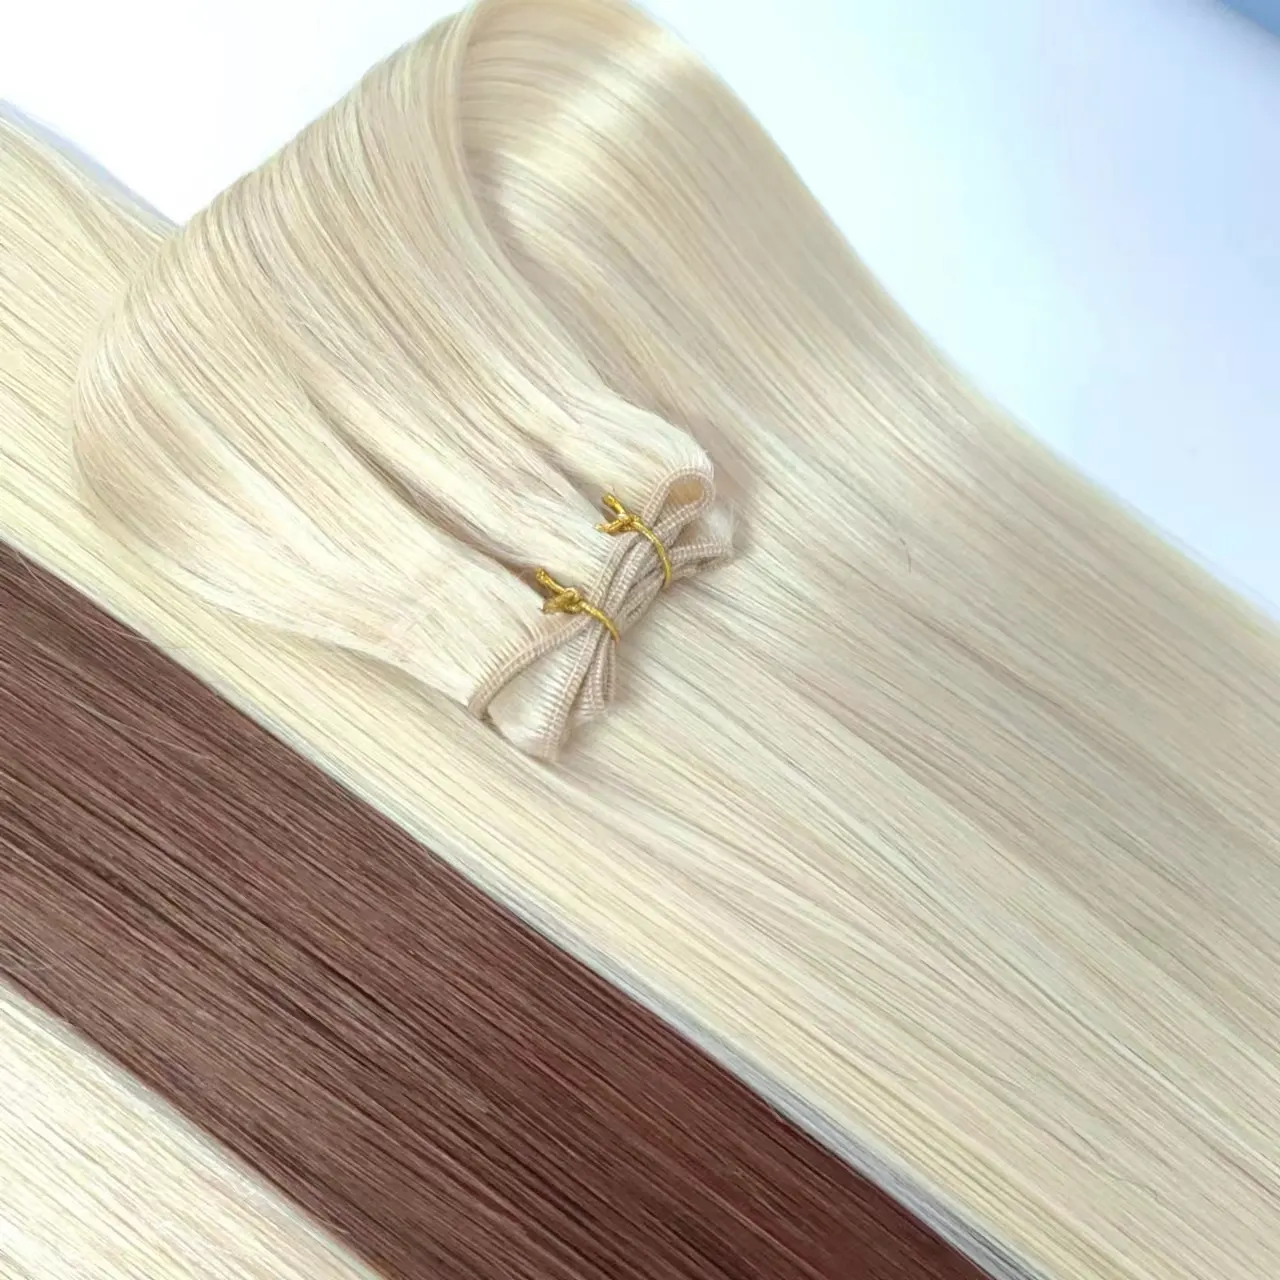 QICAI छोटा सा छेद के साथ आसान उपयोग डबल तैयार की बाल एक्सटेंशन जोड़ने मात्रा और लंबाई कुंवारी बाल अदृश्य त्वचा मशीन कपड़ा